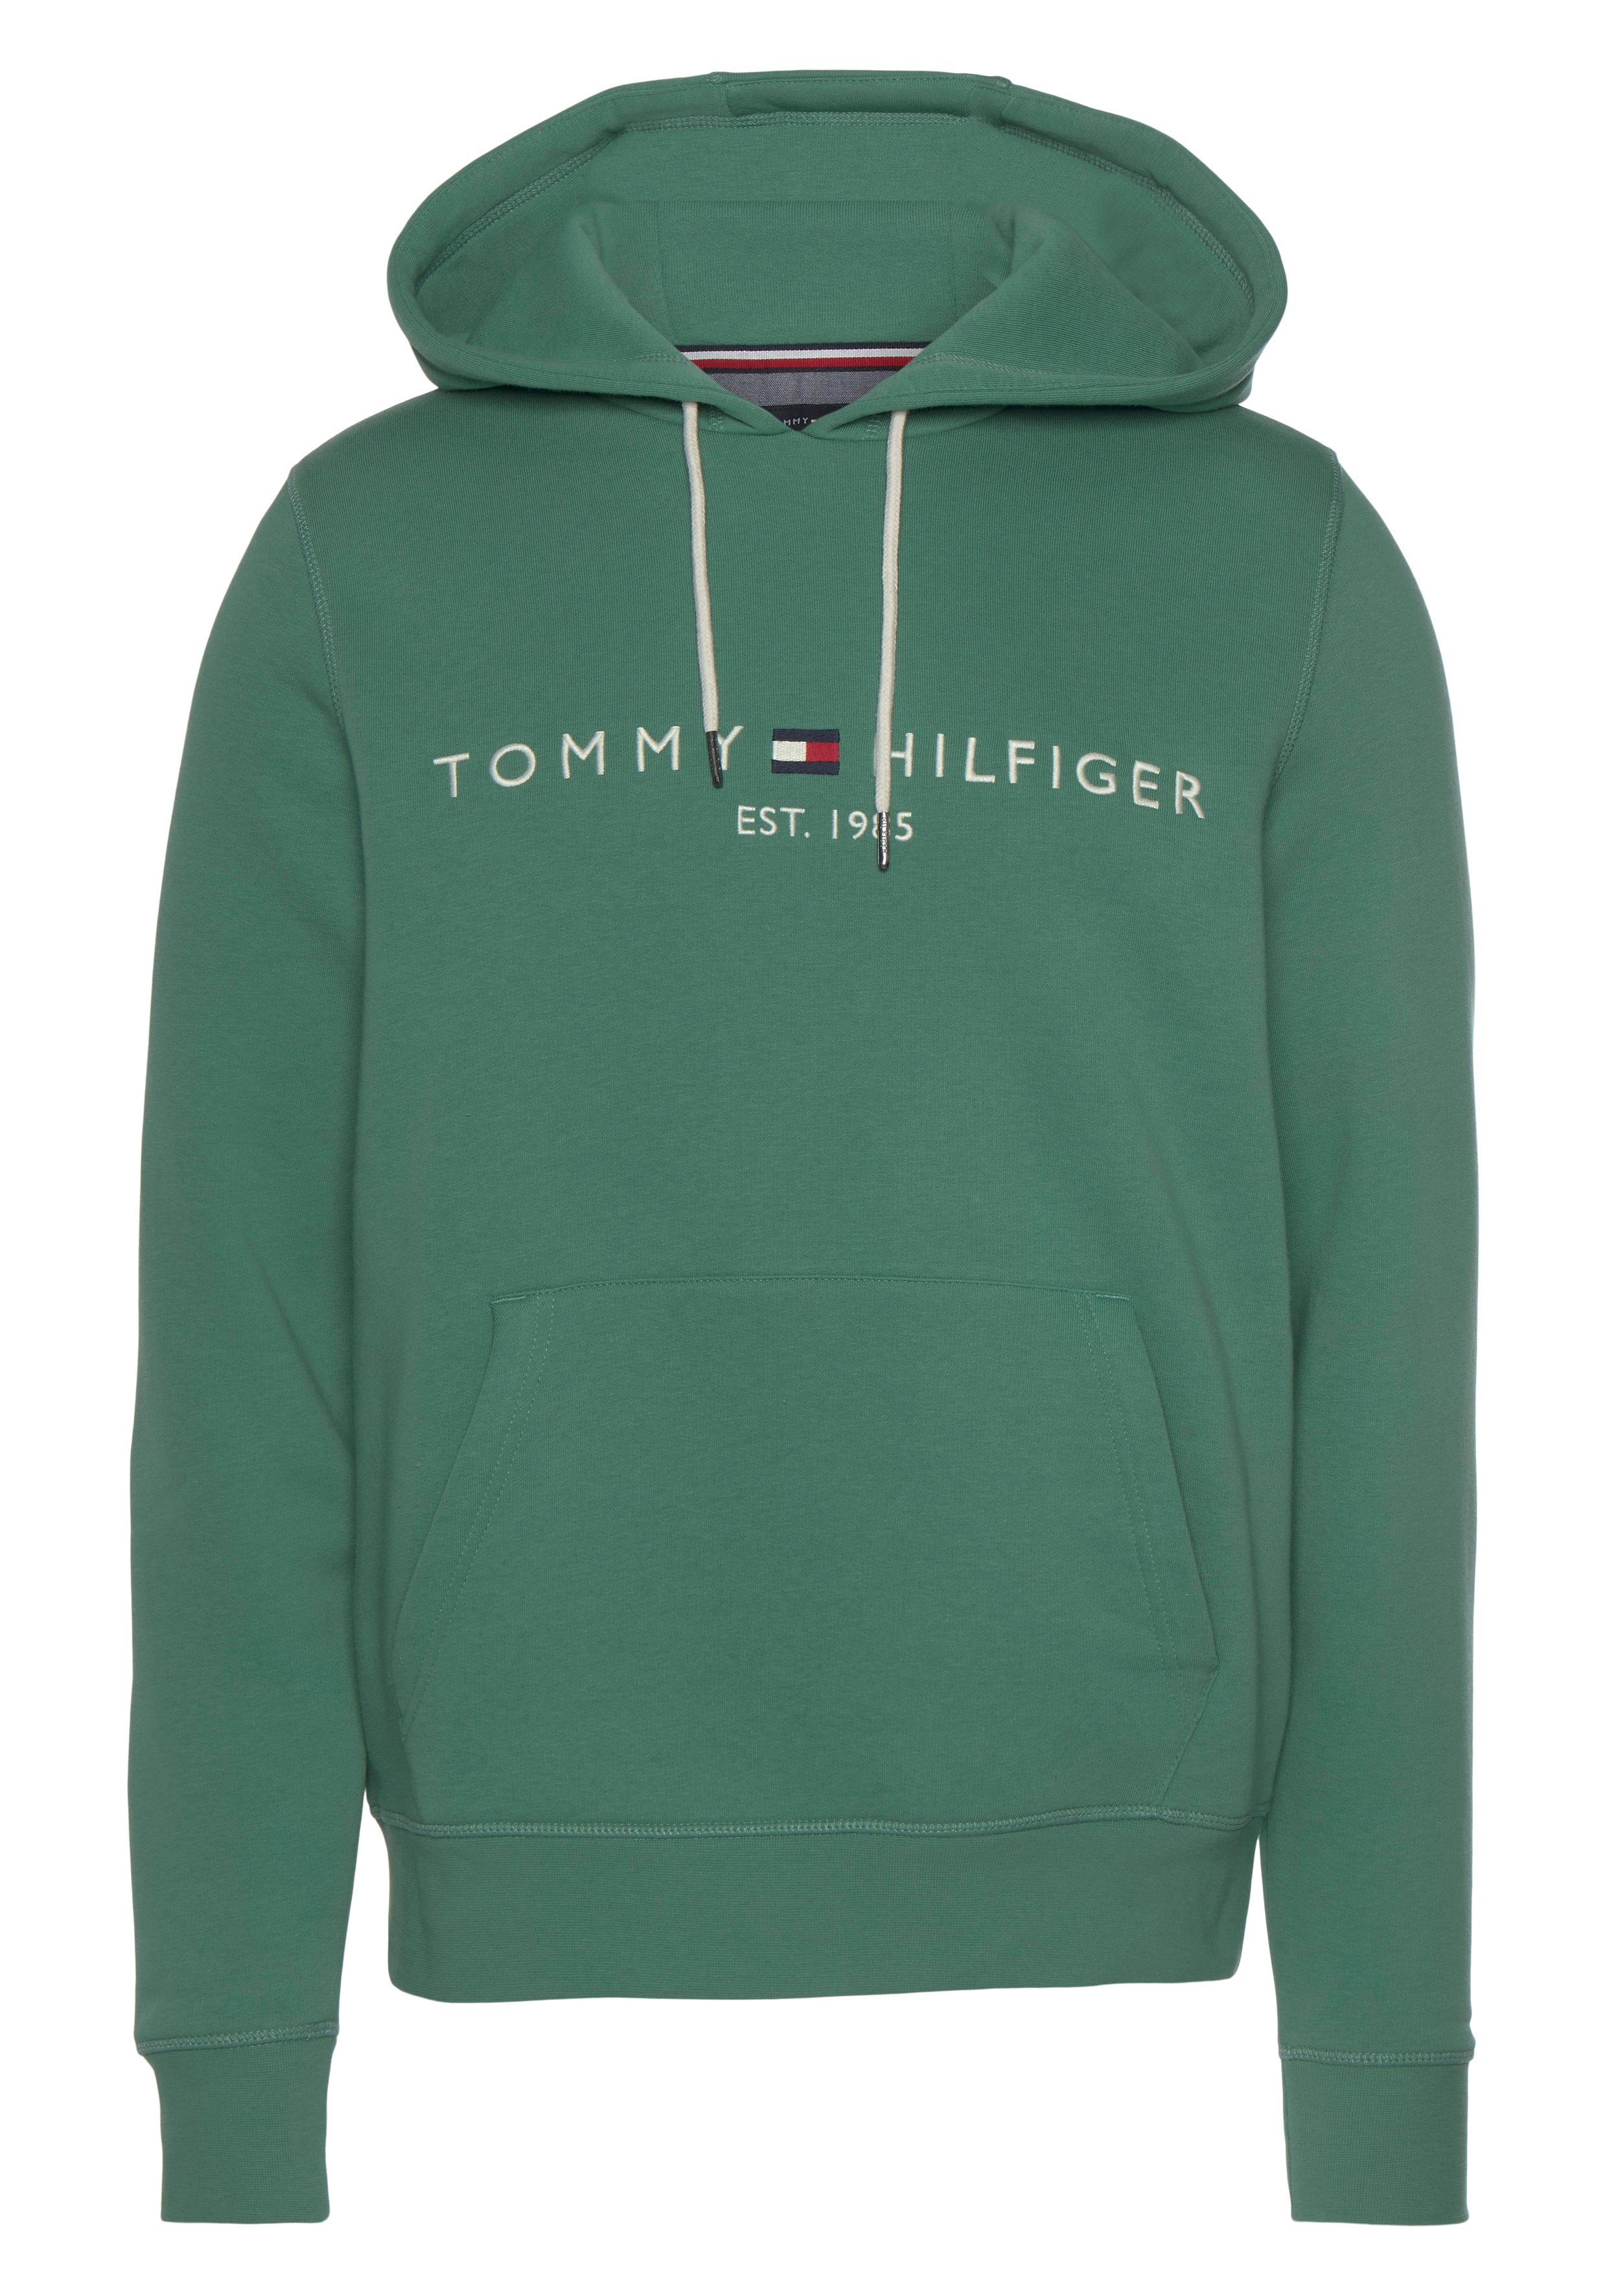 Tommy Hilfiger Kapuzensweatshirt »TOMMY LOGO HOODY« mit Kapuze und  Kängurutasche online kaufen | OTTO